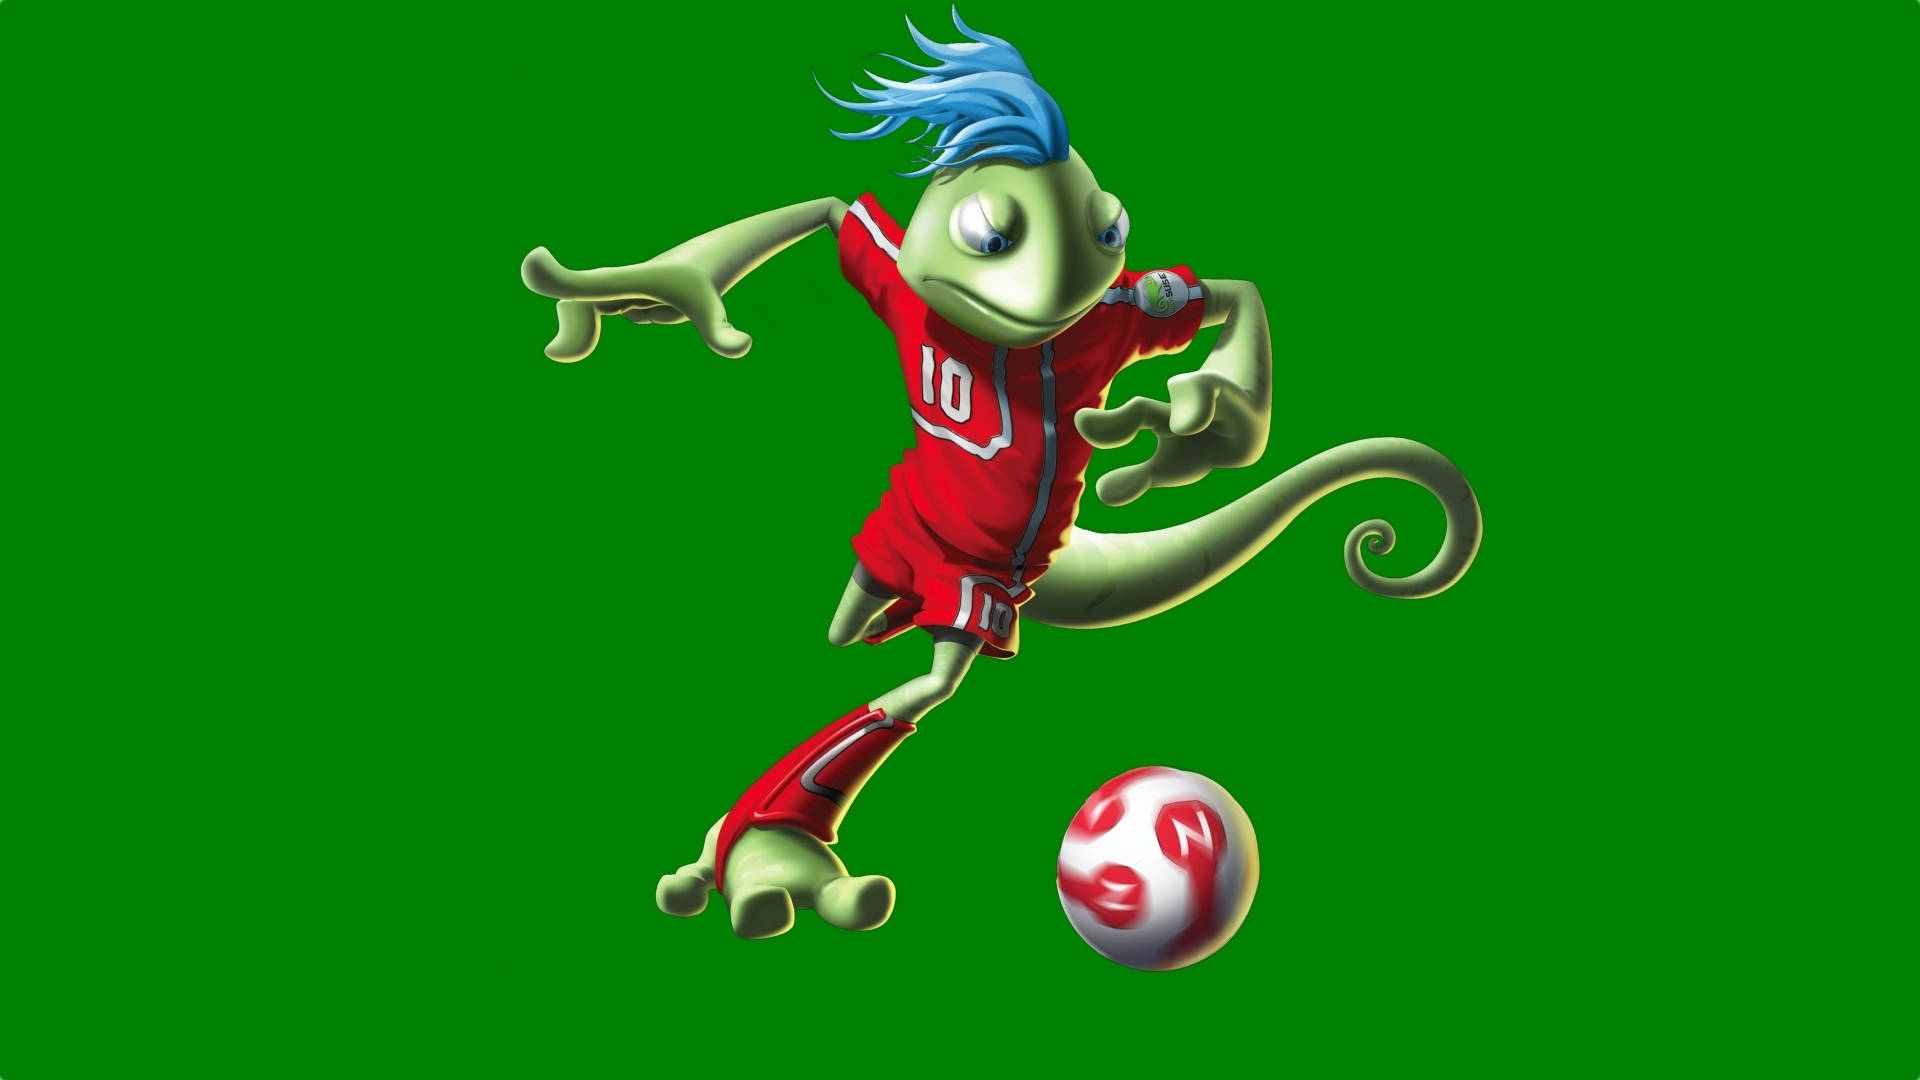 Cool Soccer Lizard Mascot Wallpaper